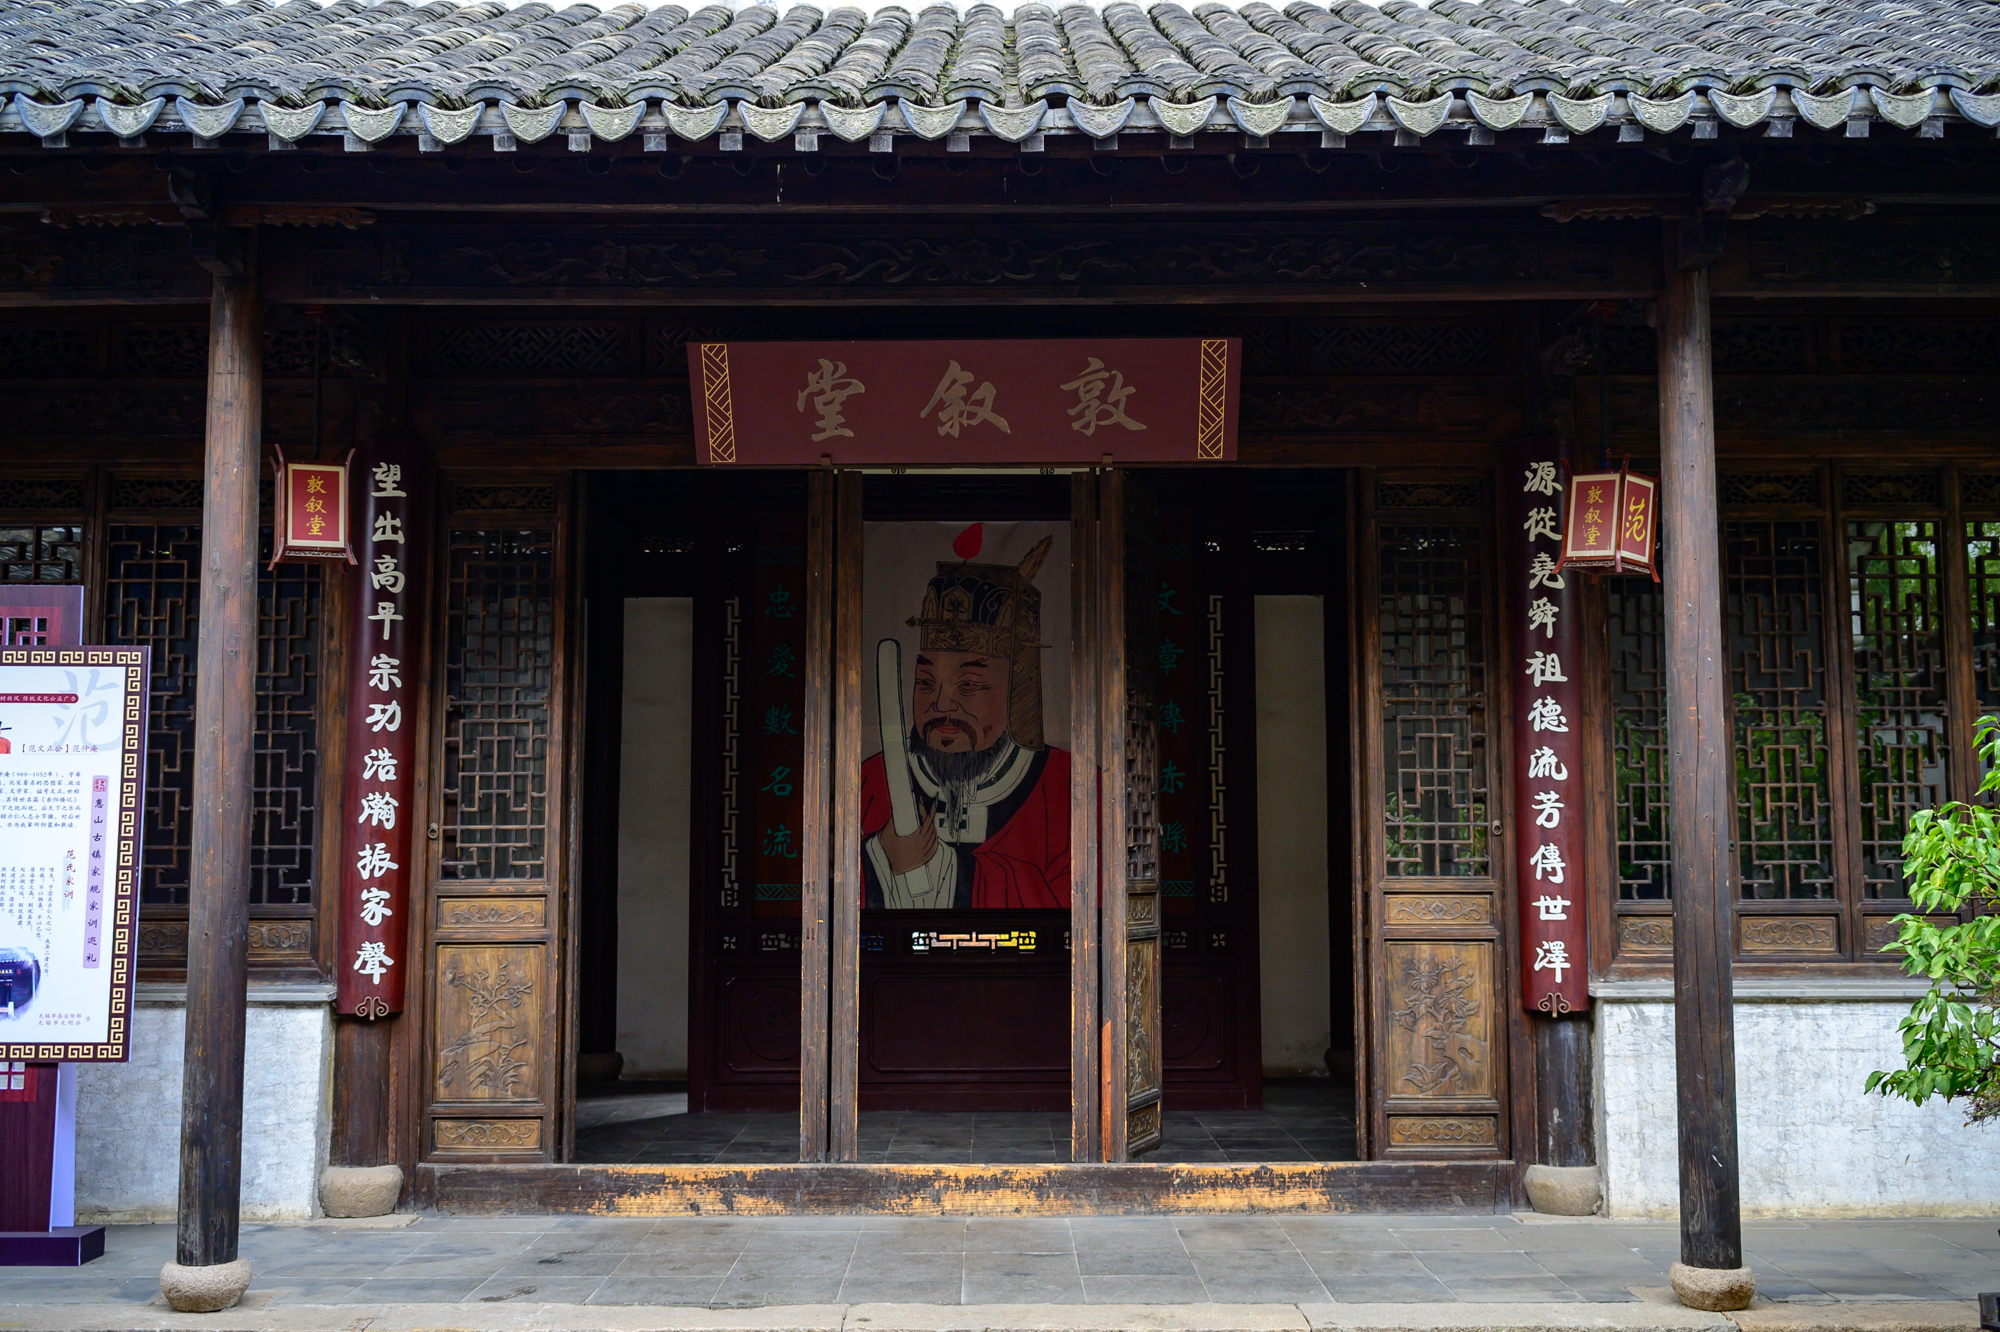 走进无锡最古老的街区惠山古镇探访历史名人祠堂范文正公祠